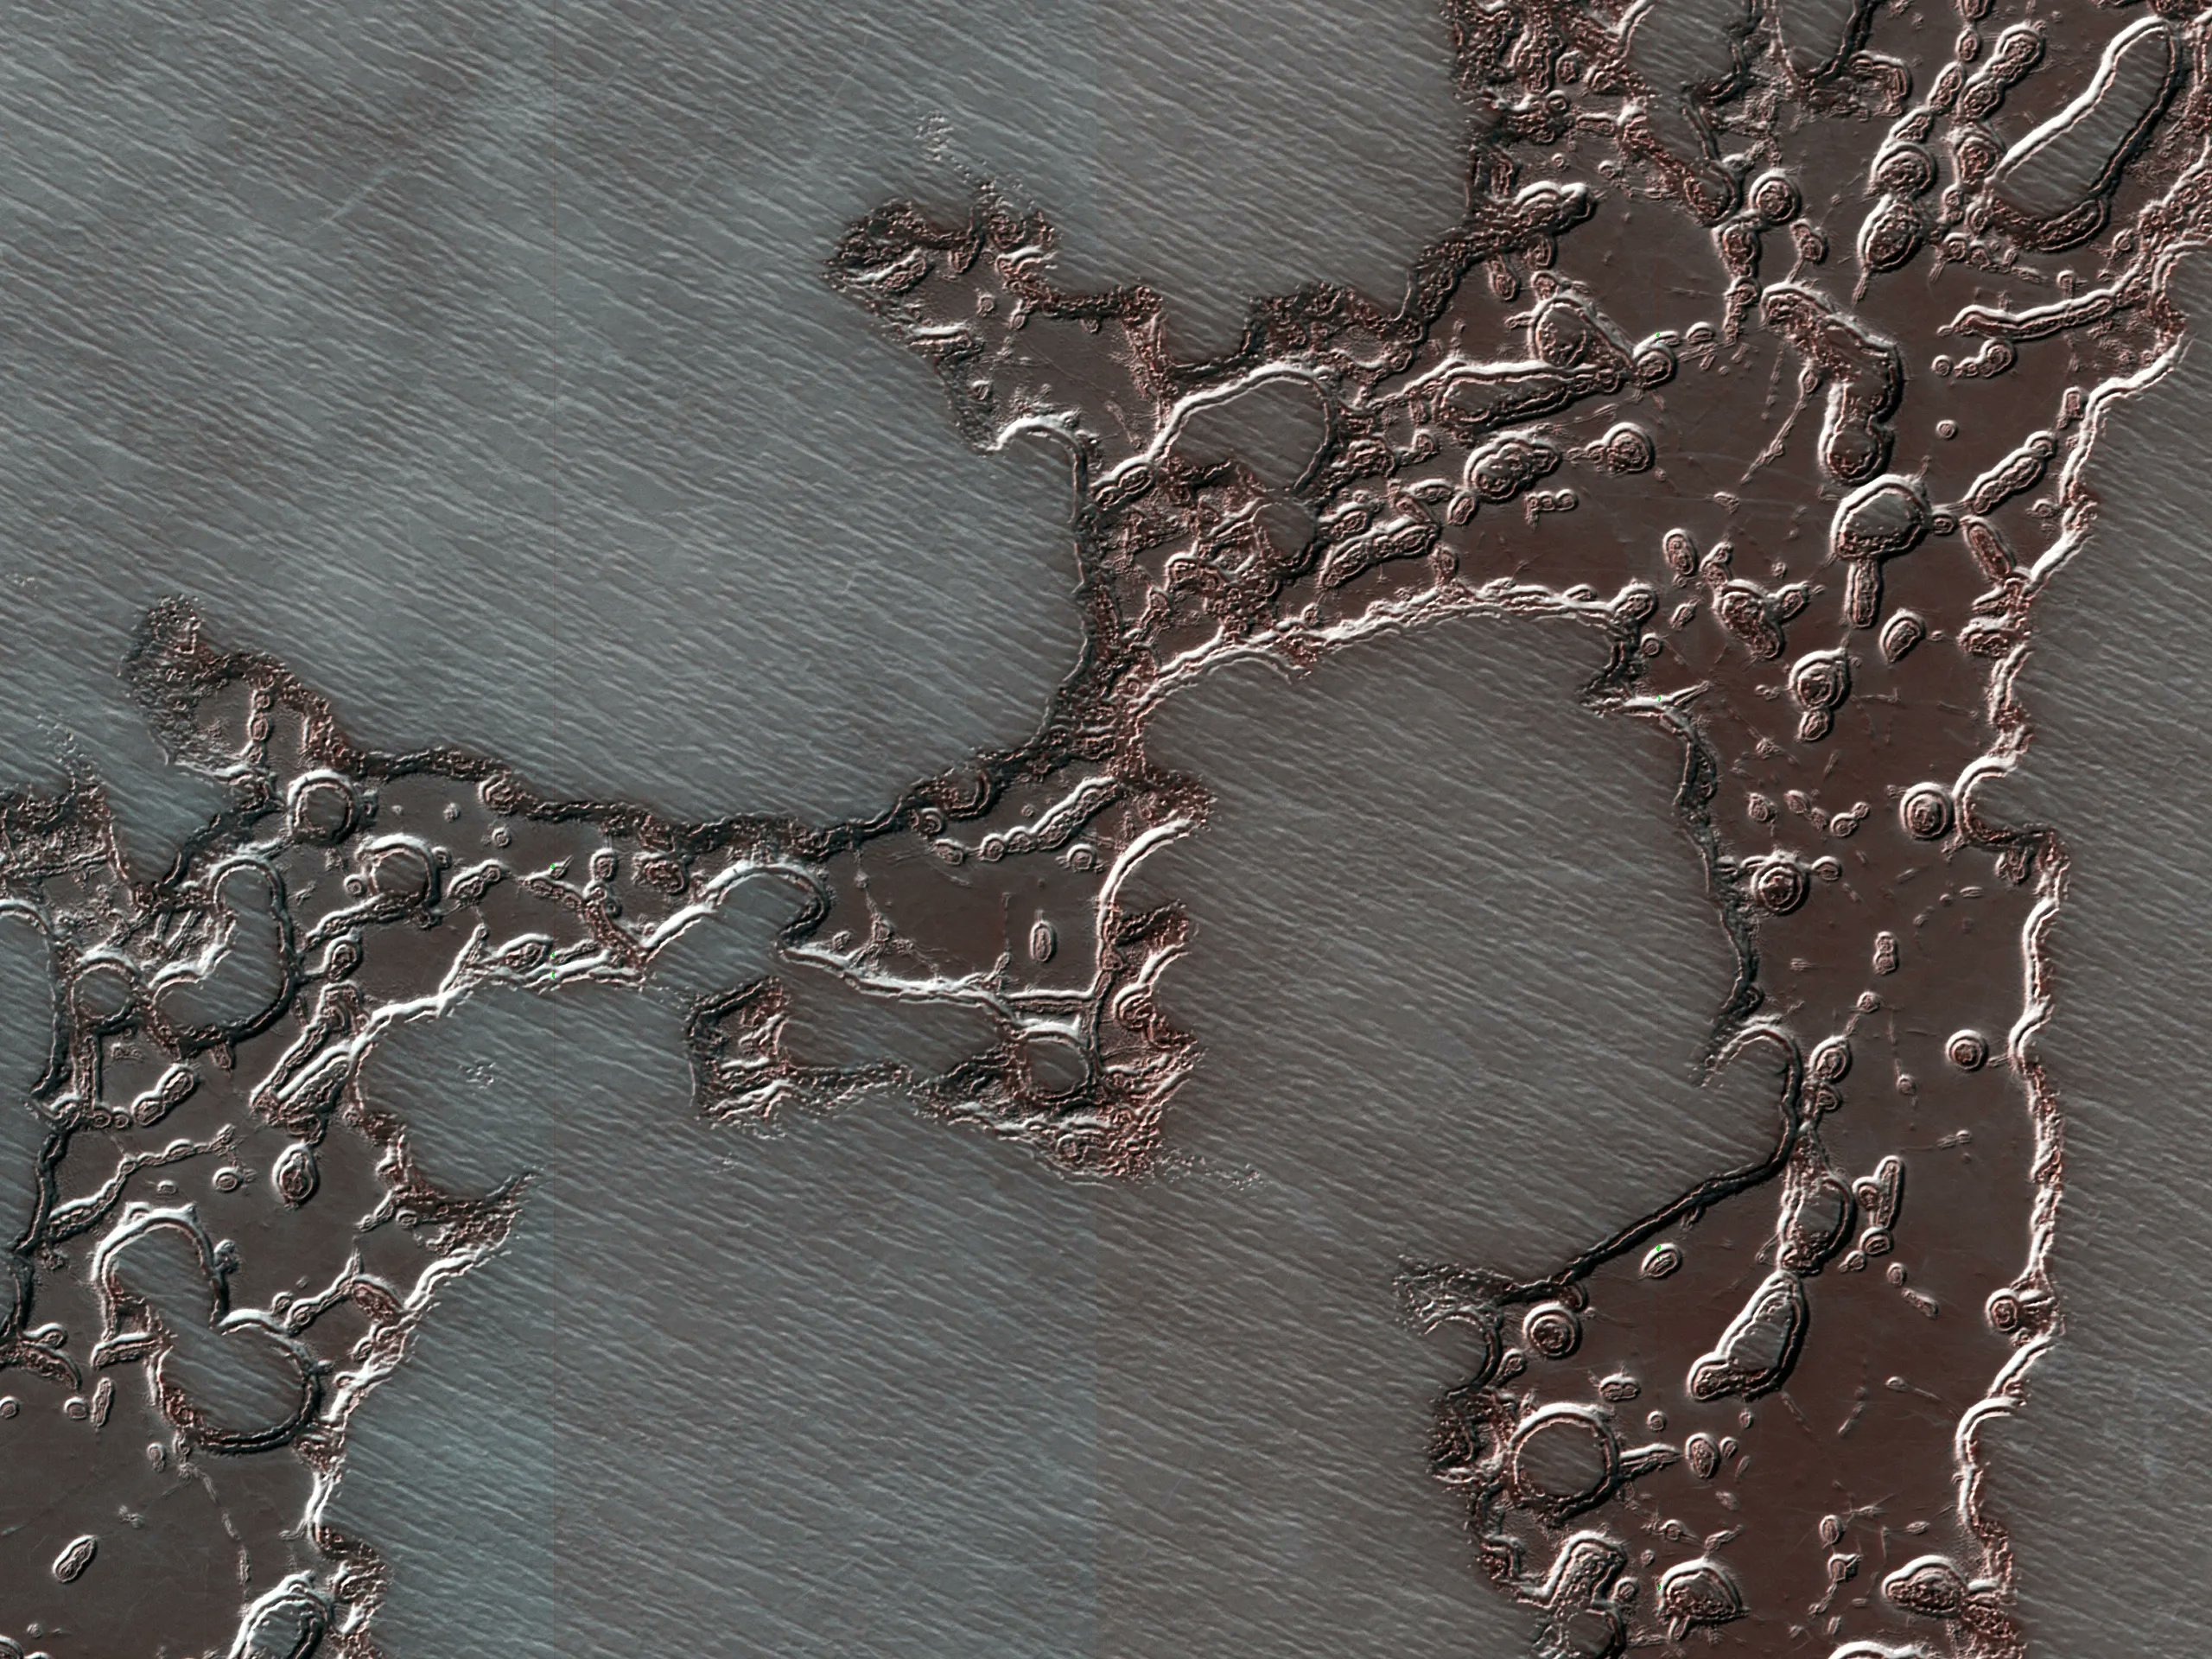 Ямчатая местность на Марсе